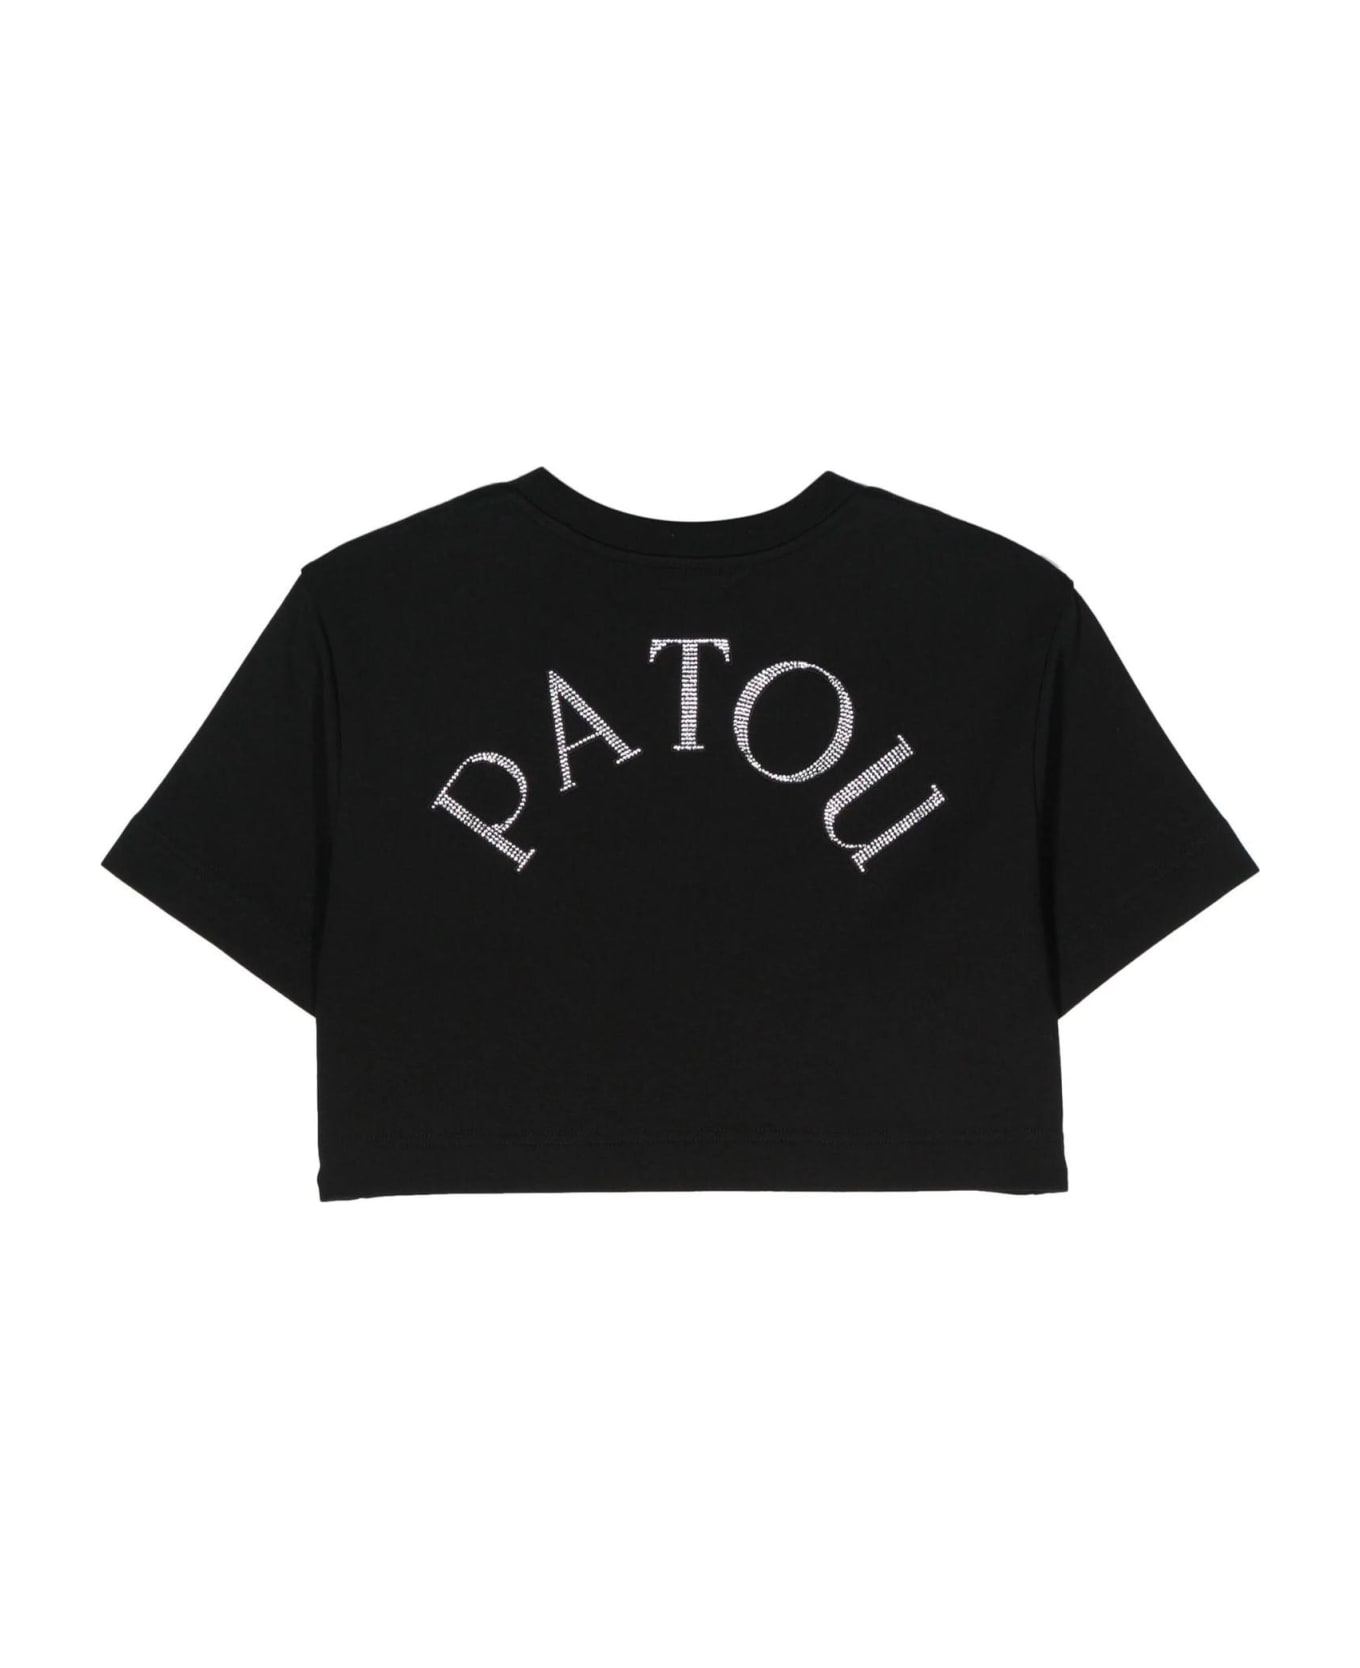 Patou Black Organic Cotton T-shirt - Black Tシャツ